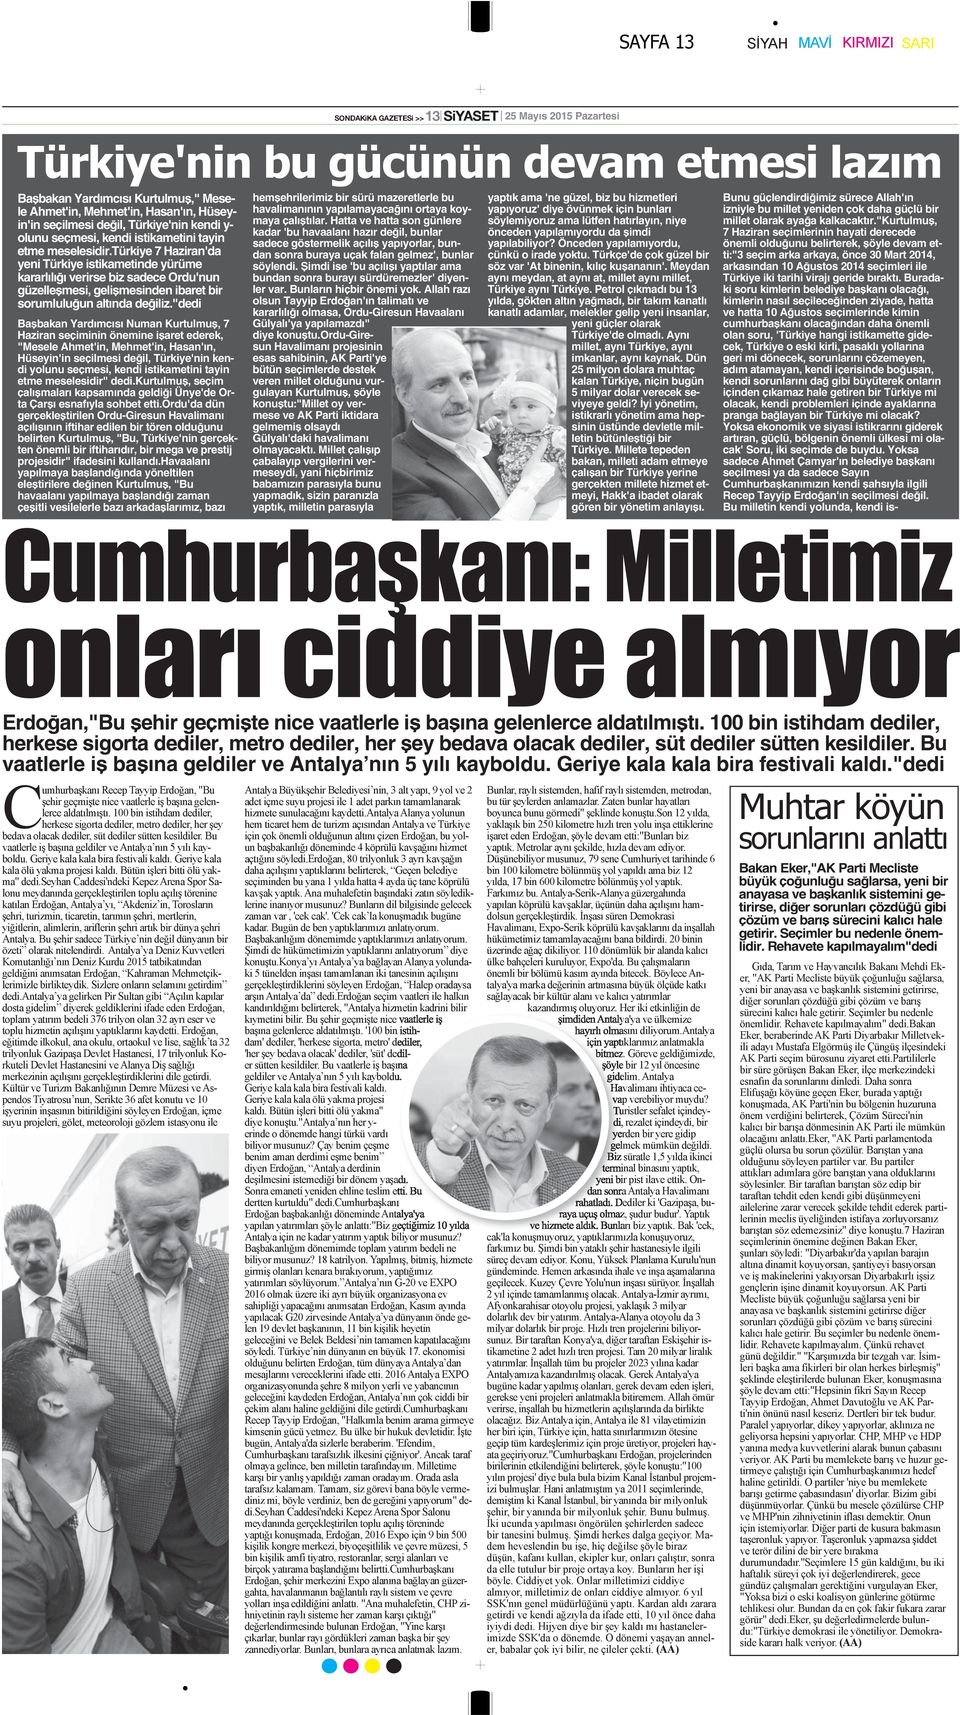 "dedi Başbakan Yardımcısı Numan Kurtulmuş, 7 Haziran seçiminin önemine işaret ederek, "Mesele Ahmet'in, Mehmet'in, Hasan'ın, Hüseyin'in seçilmesi değil, Türkiye'nin kendi yolunu seçmesi, kendi